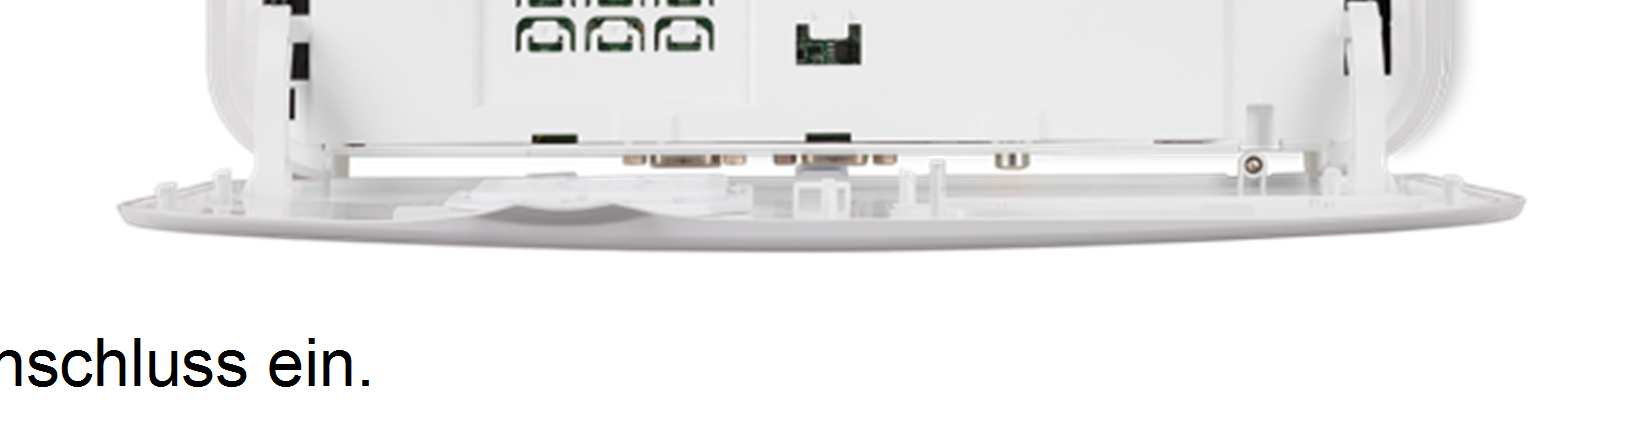 Das Acer Hidden Port Design 1. Was ist der Acer Hidden Port? Der Acer Hidden Port ist ein HDMI/MHL Anschluss, der sich unter dem Deckel des Gehäuses vom Projektor befindet. 2.